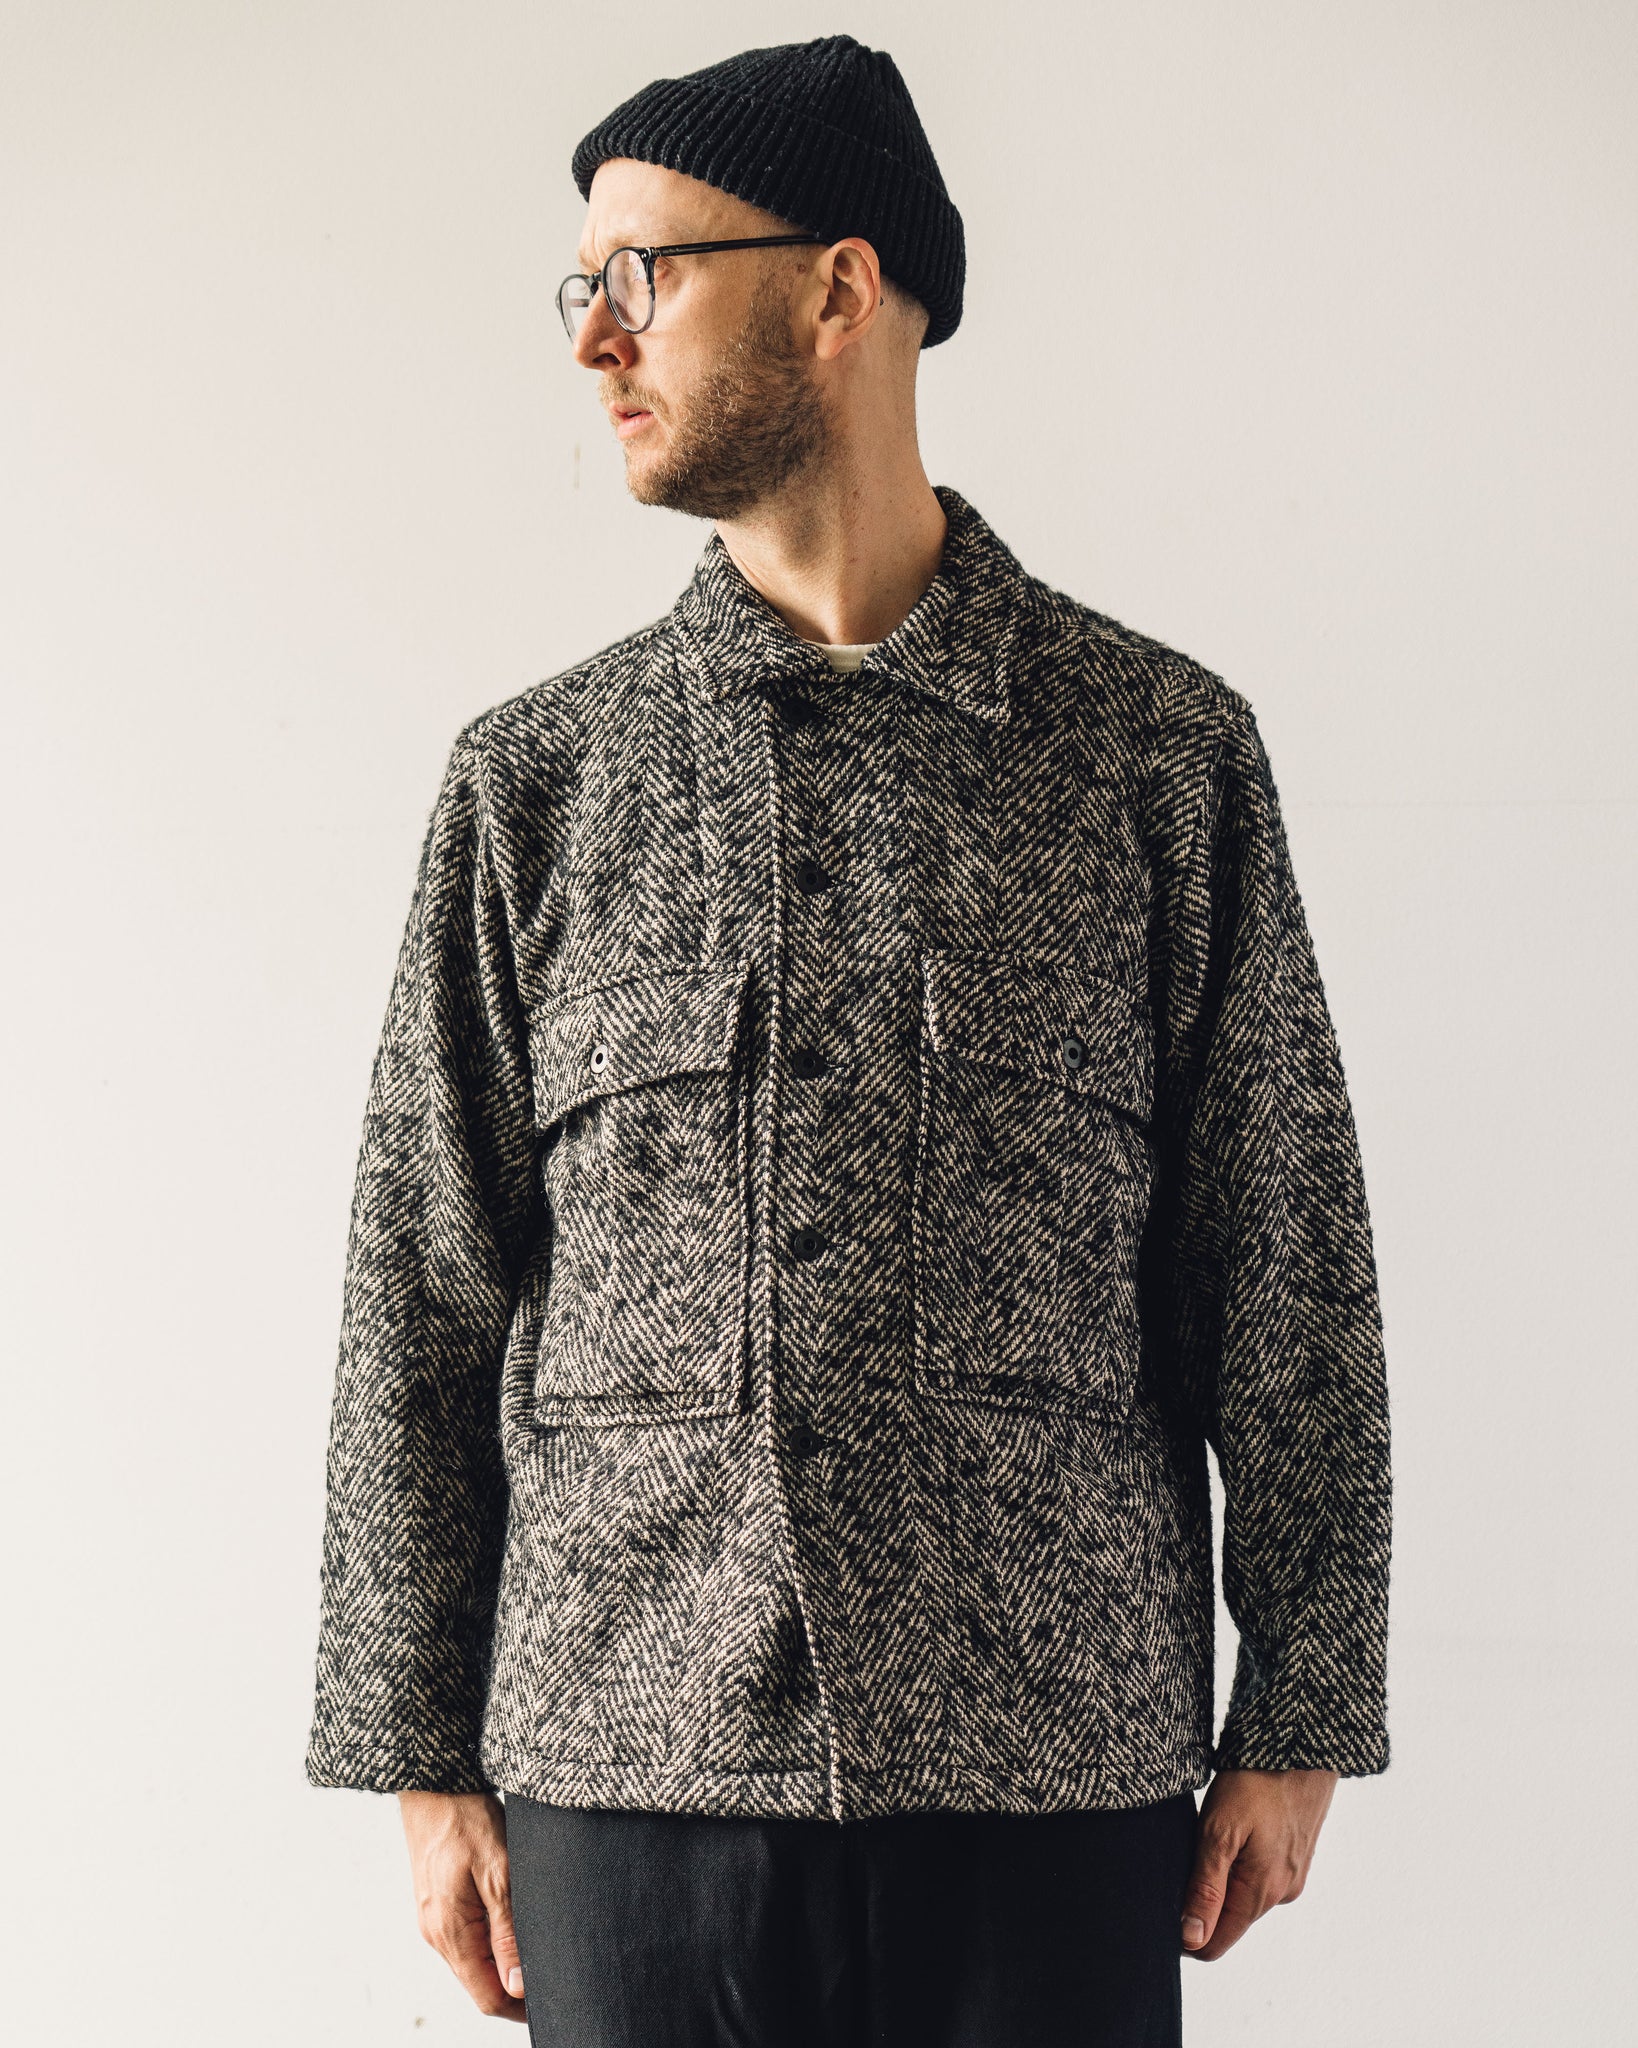 Evan Kinori Bellow Jacket, Wool Herringbone